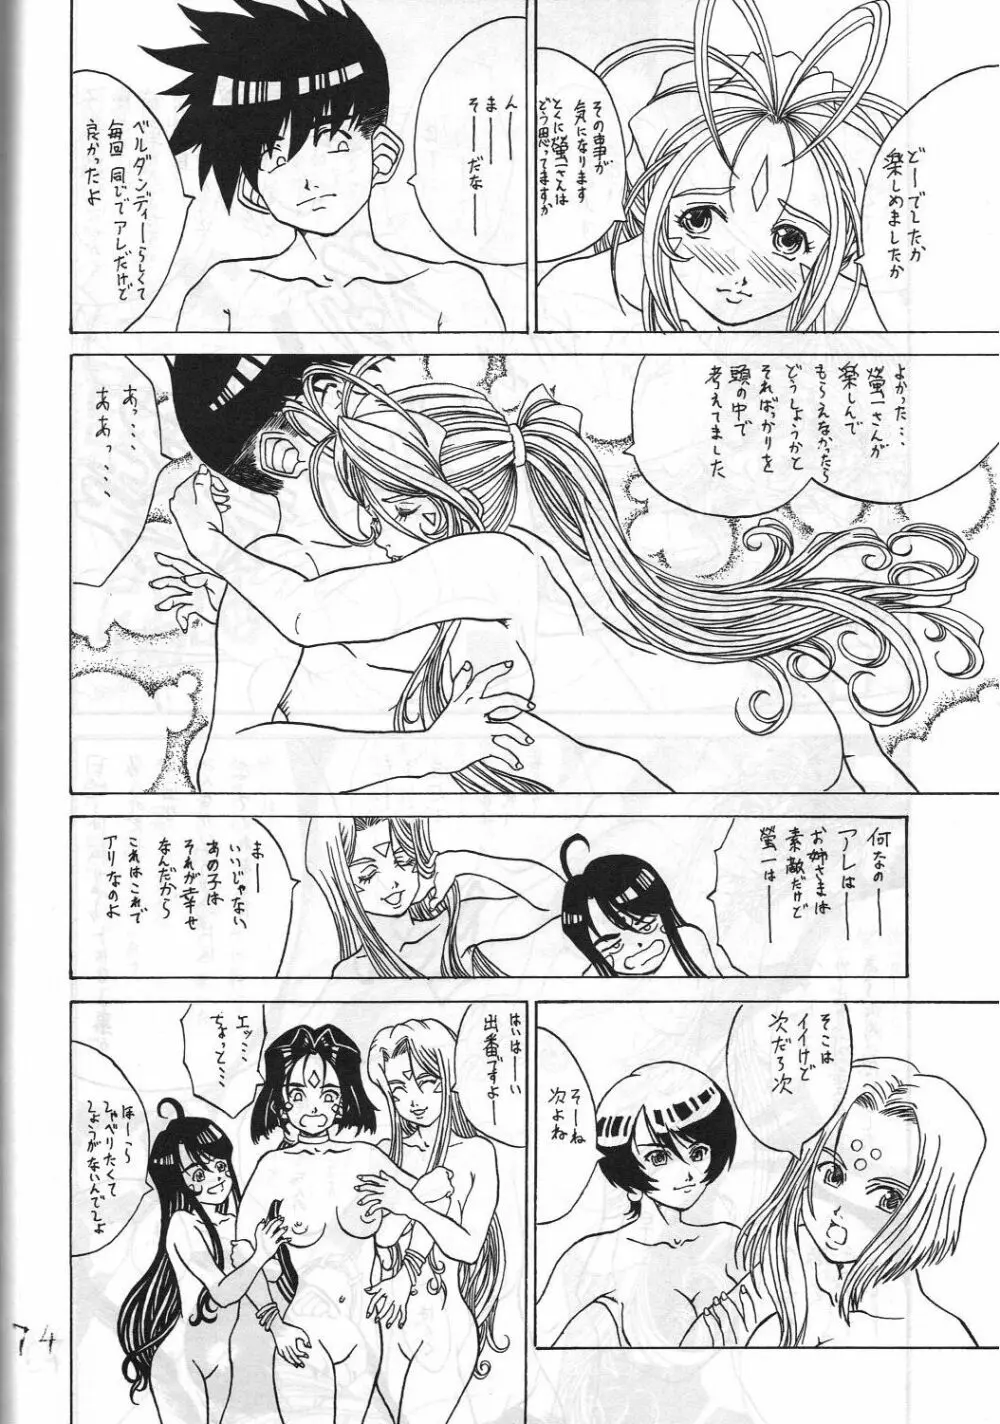 機関車は俺のジョンソン in my life (美竹) Eanakuoto (ああっ女神さまっ) - page75